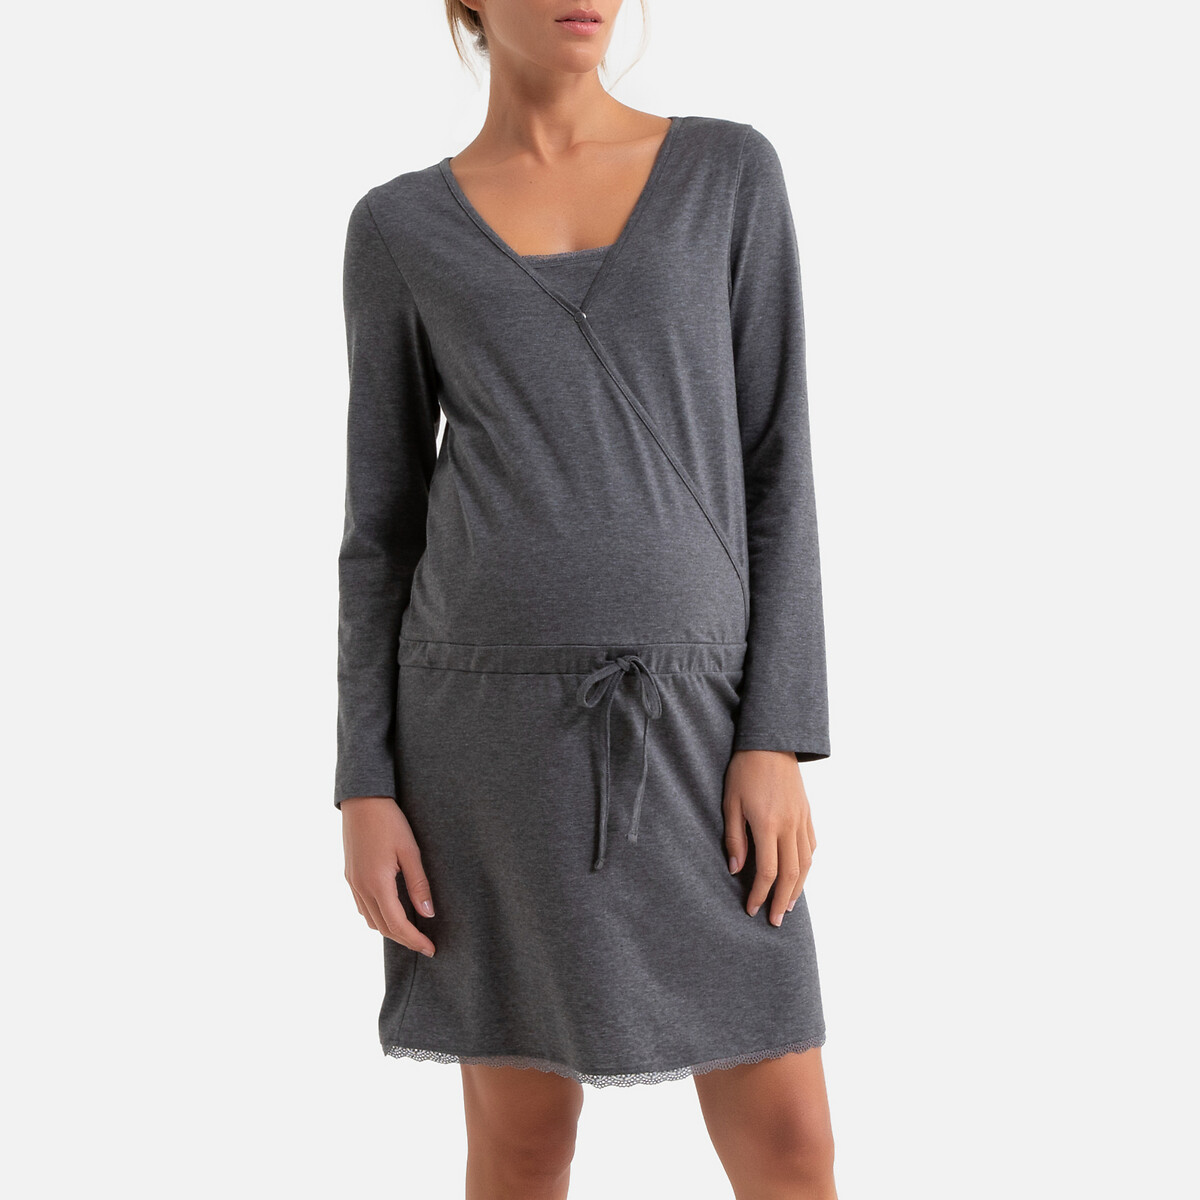 Рубашка La Redoute Ночная для периода беременности и грудного вскармливания 42/44 (FR) - 48/50 (RUS) серый, размер 42/44 (FR) - 48/50 (RUS)